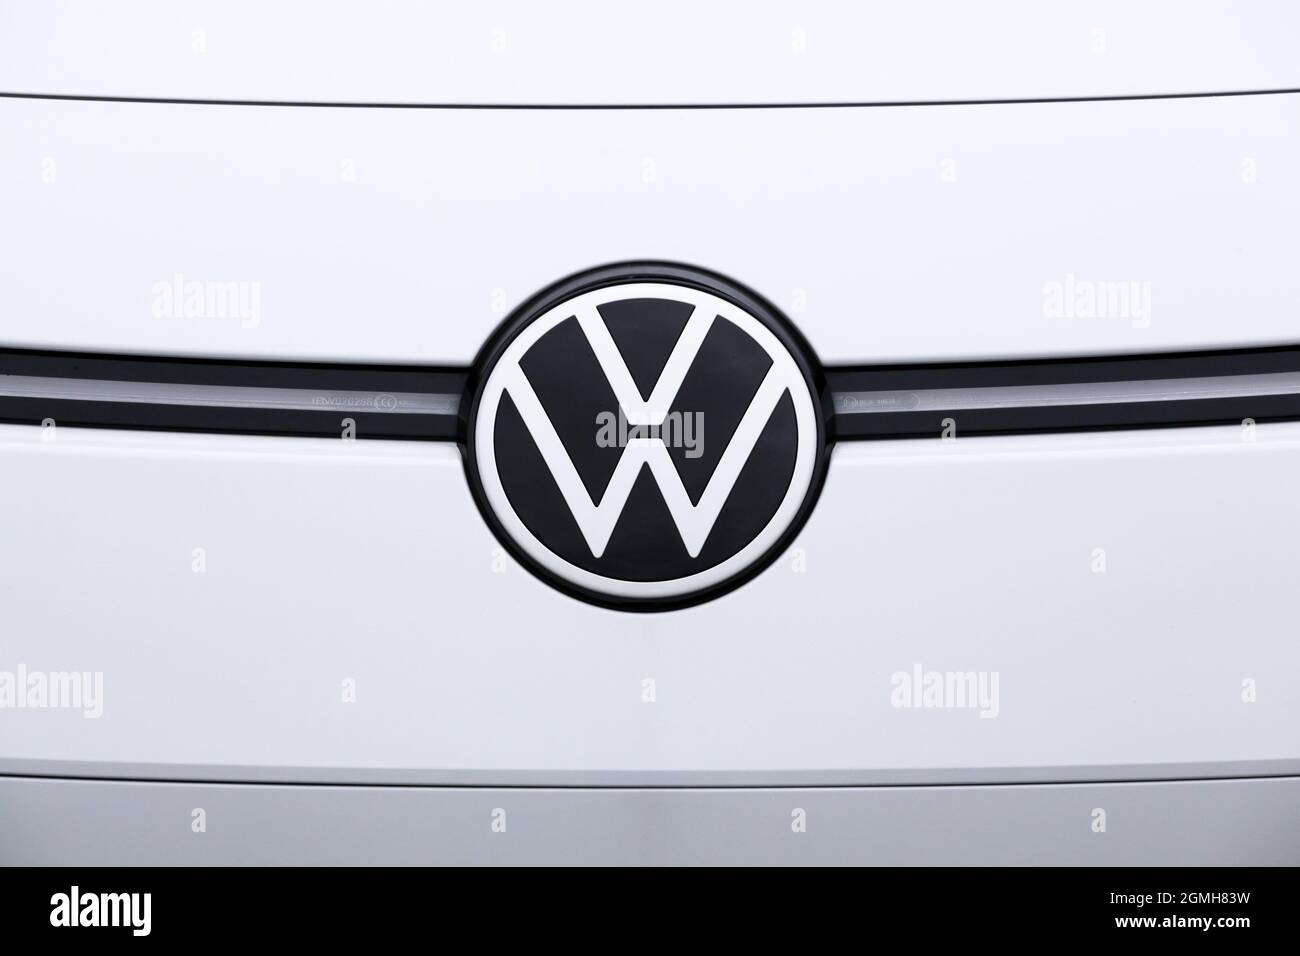 Horsens, Danimarca - 13 maggio 2021: Logo Volkswagen su un'auto. Volkswagen è un produttore tedesco di automobili con sede a Wolfsburg, Germania Foto Stock